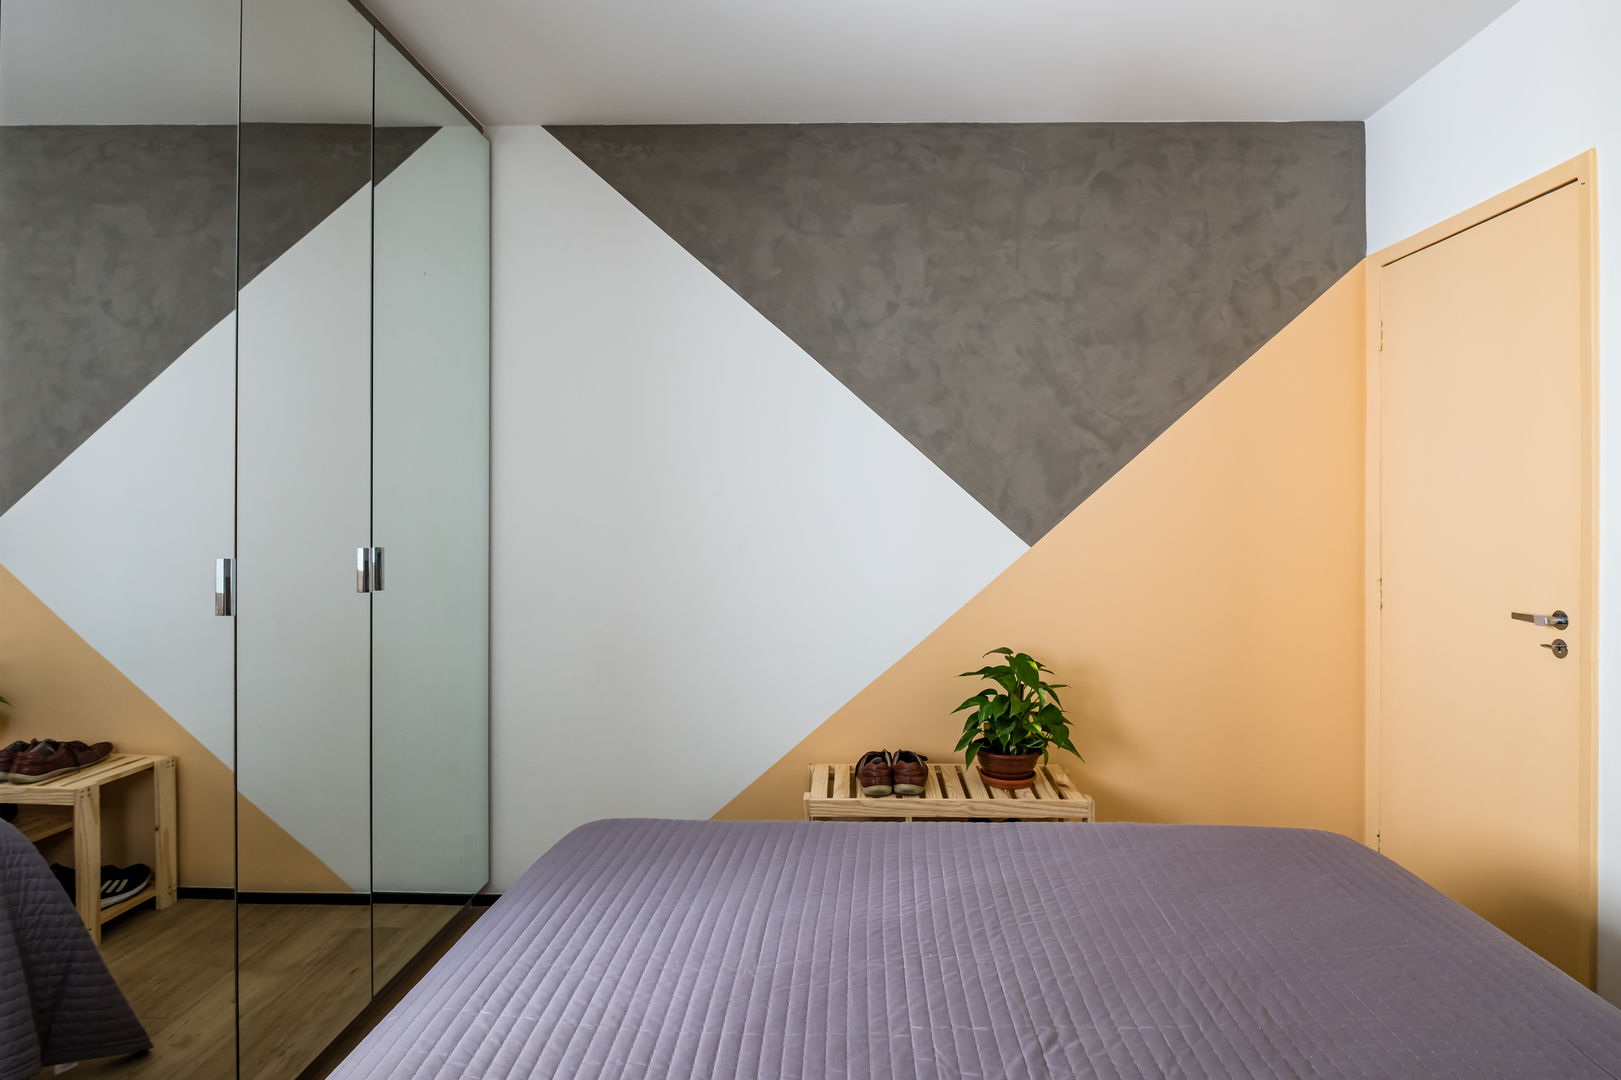 Apartamento Compacto para aluguel em tons neutros sem perder a personalidade, Studio Elã Studio Elã ห้องนอนขนาดเล็ก คอนกรีต